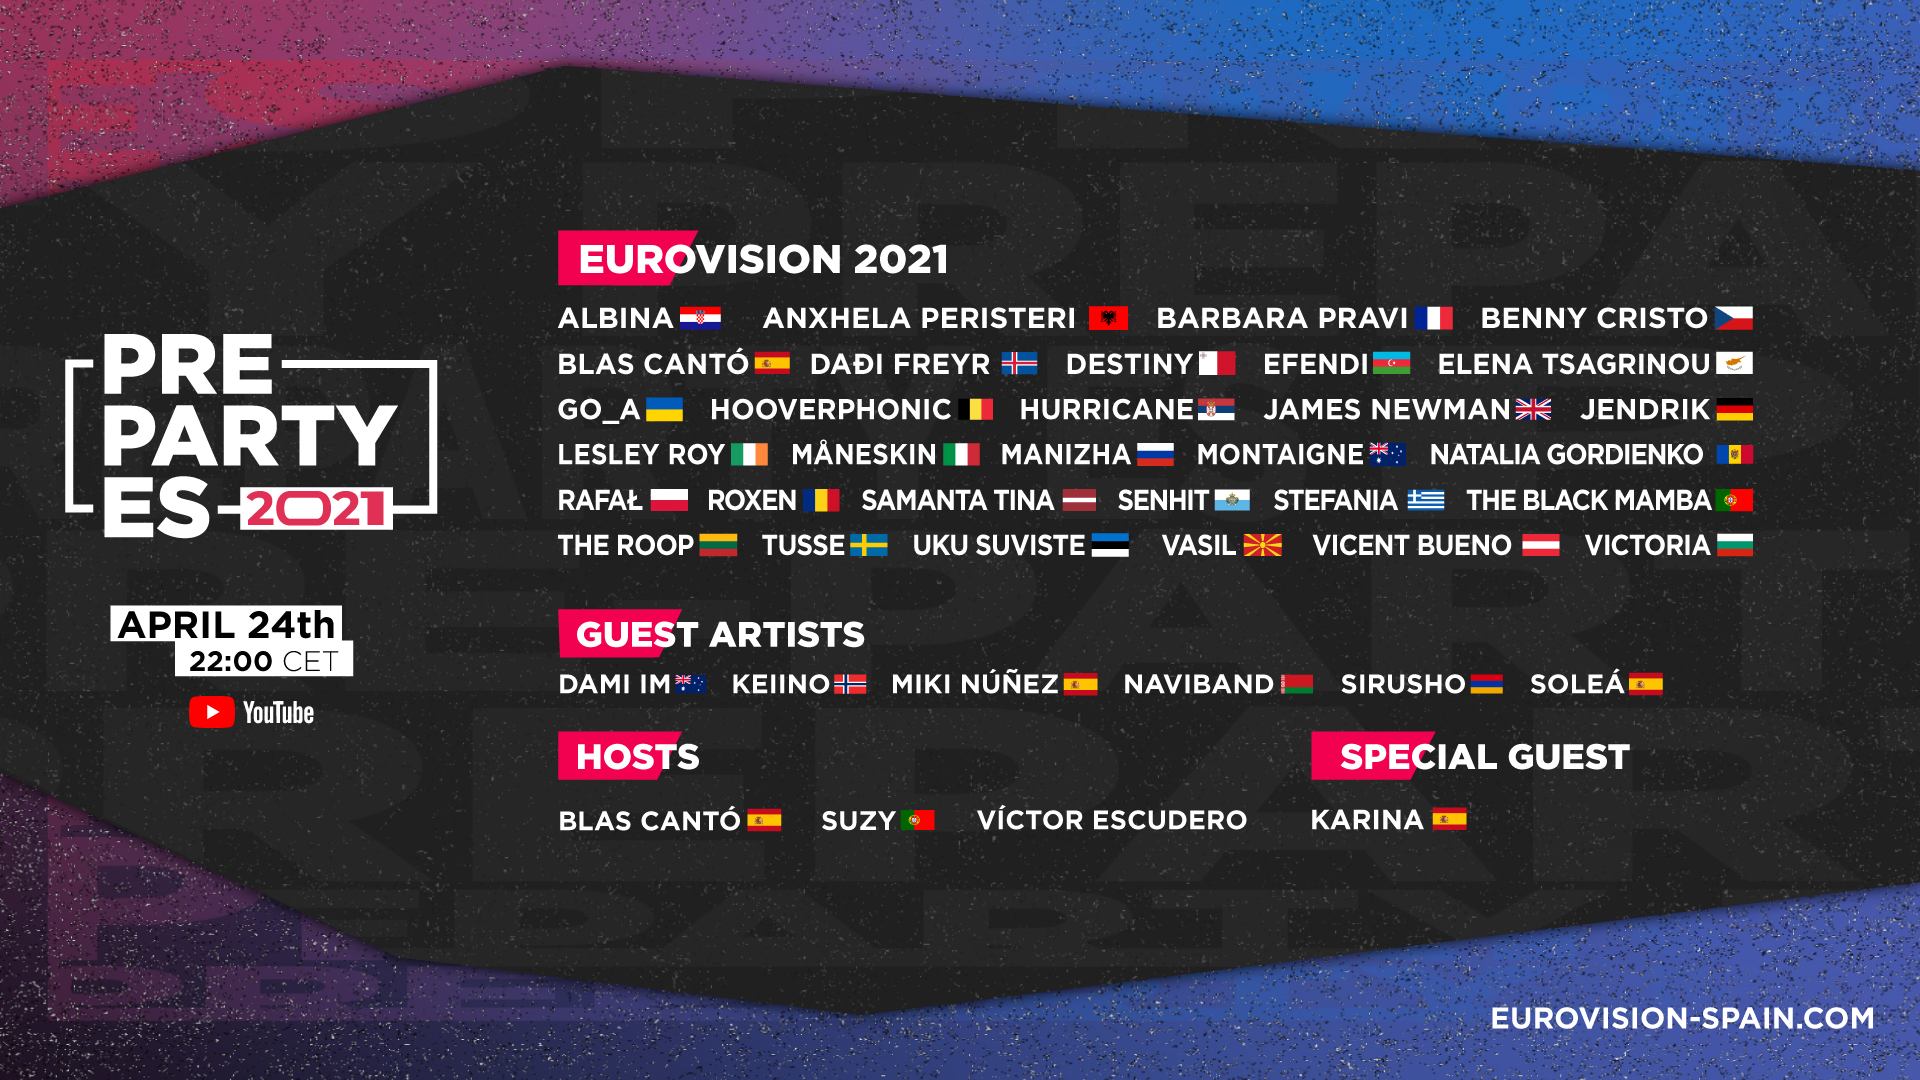 Italia y Moldavia completan el cartel de la PrePartyES, ¡así será el concierto con el 80% de artistas de Eurovisión 2021!